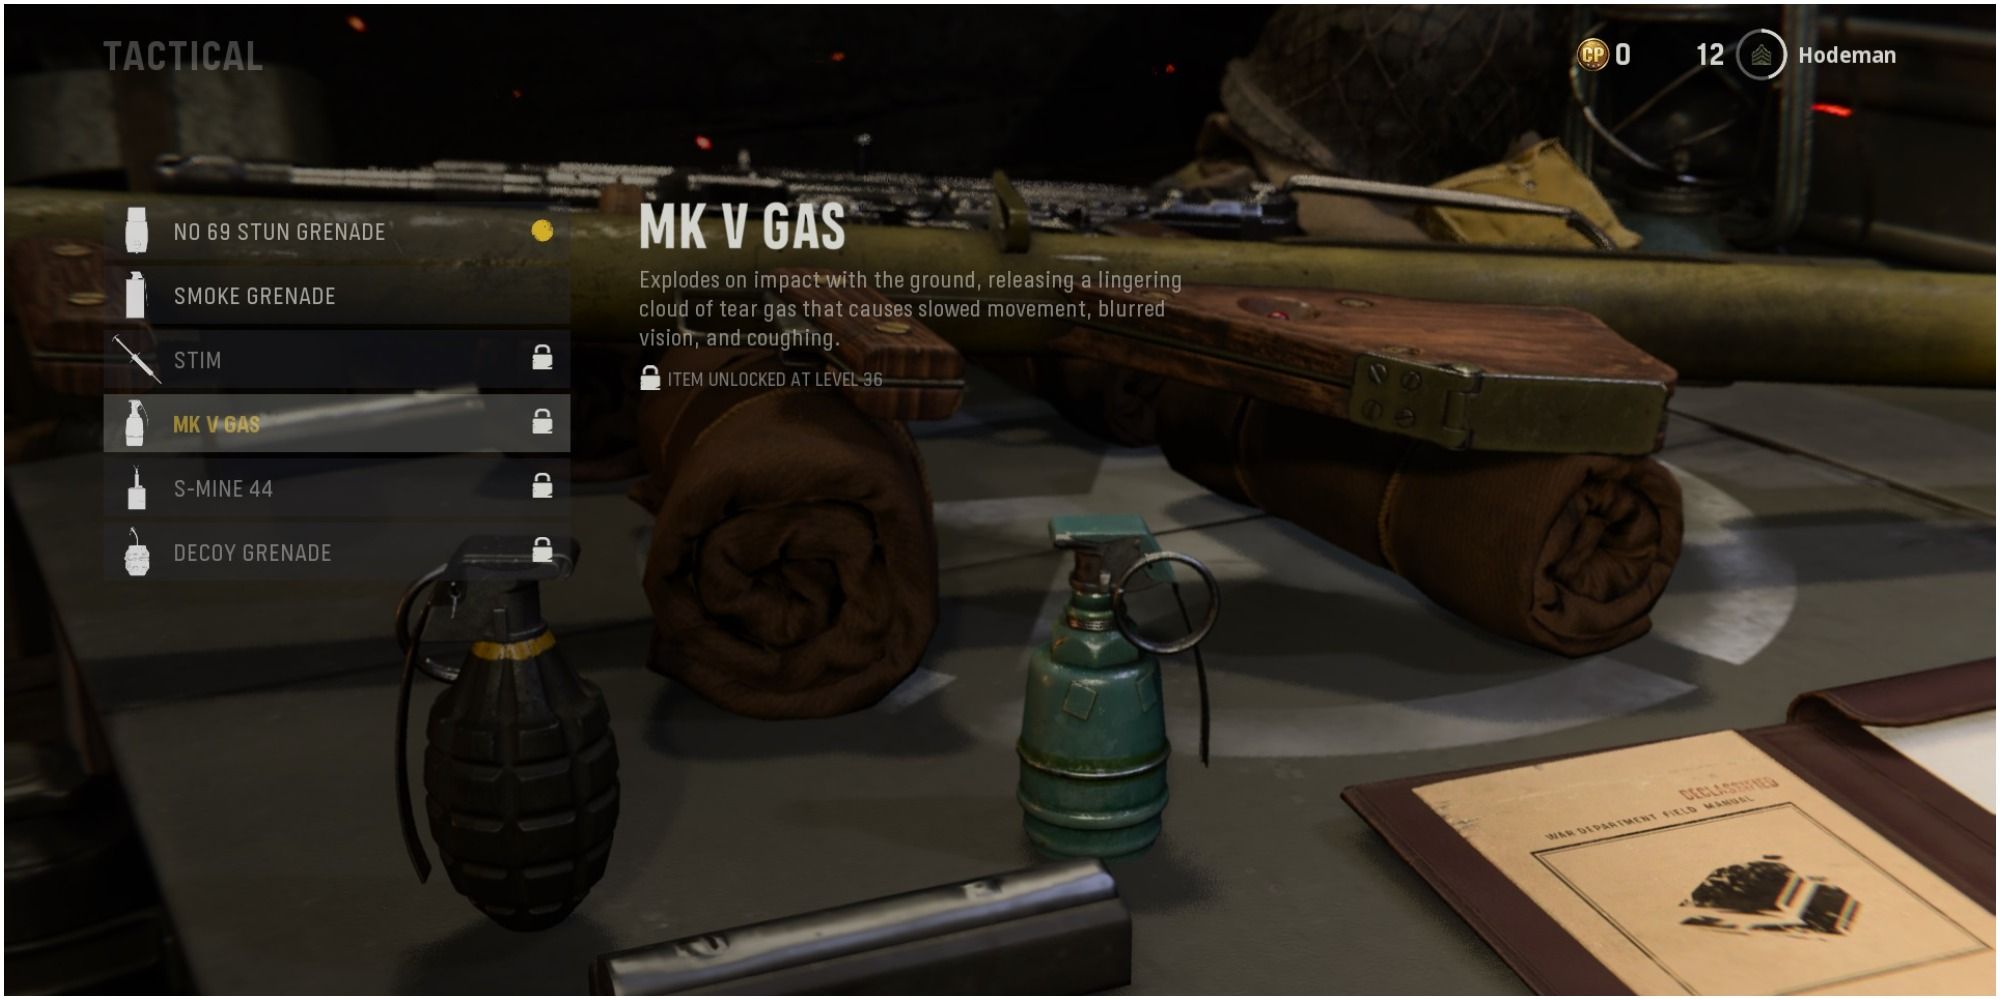 Call Of Duty Vanguard Reading The Tactical MK V Gas Description